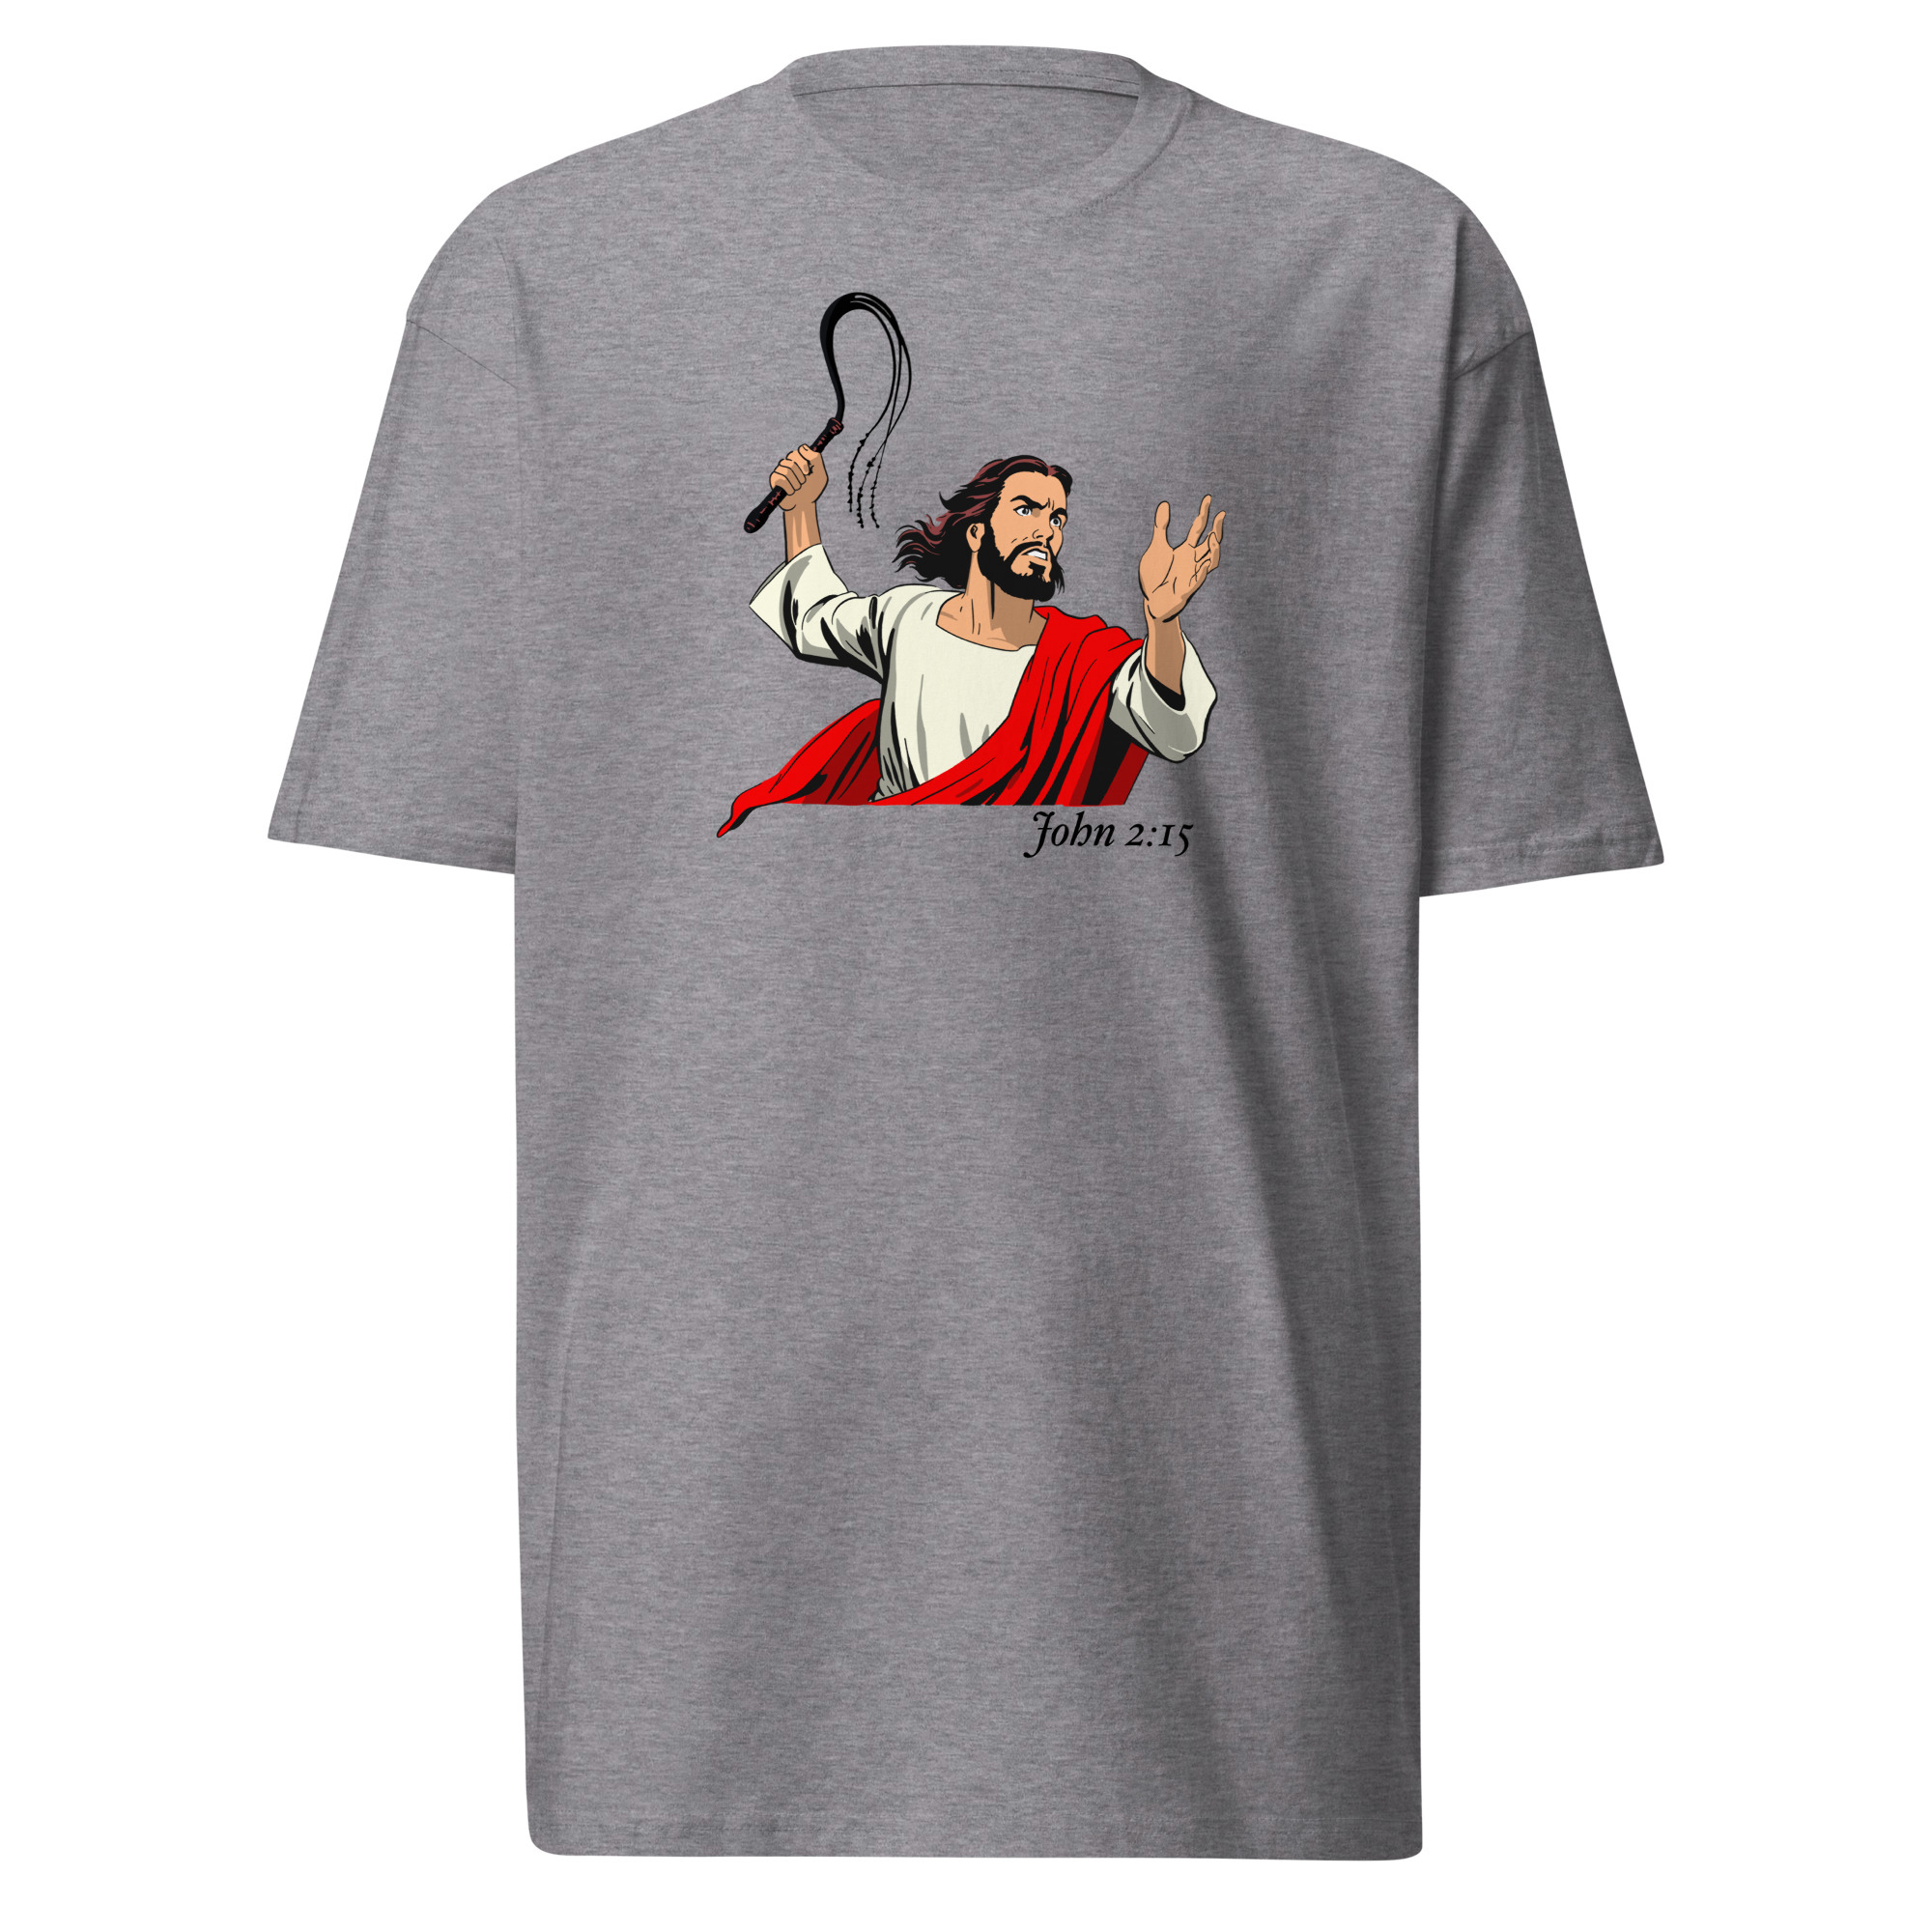 John 2:15 T-Shirt - Carbon Grey / S